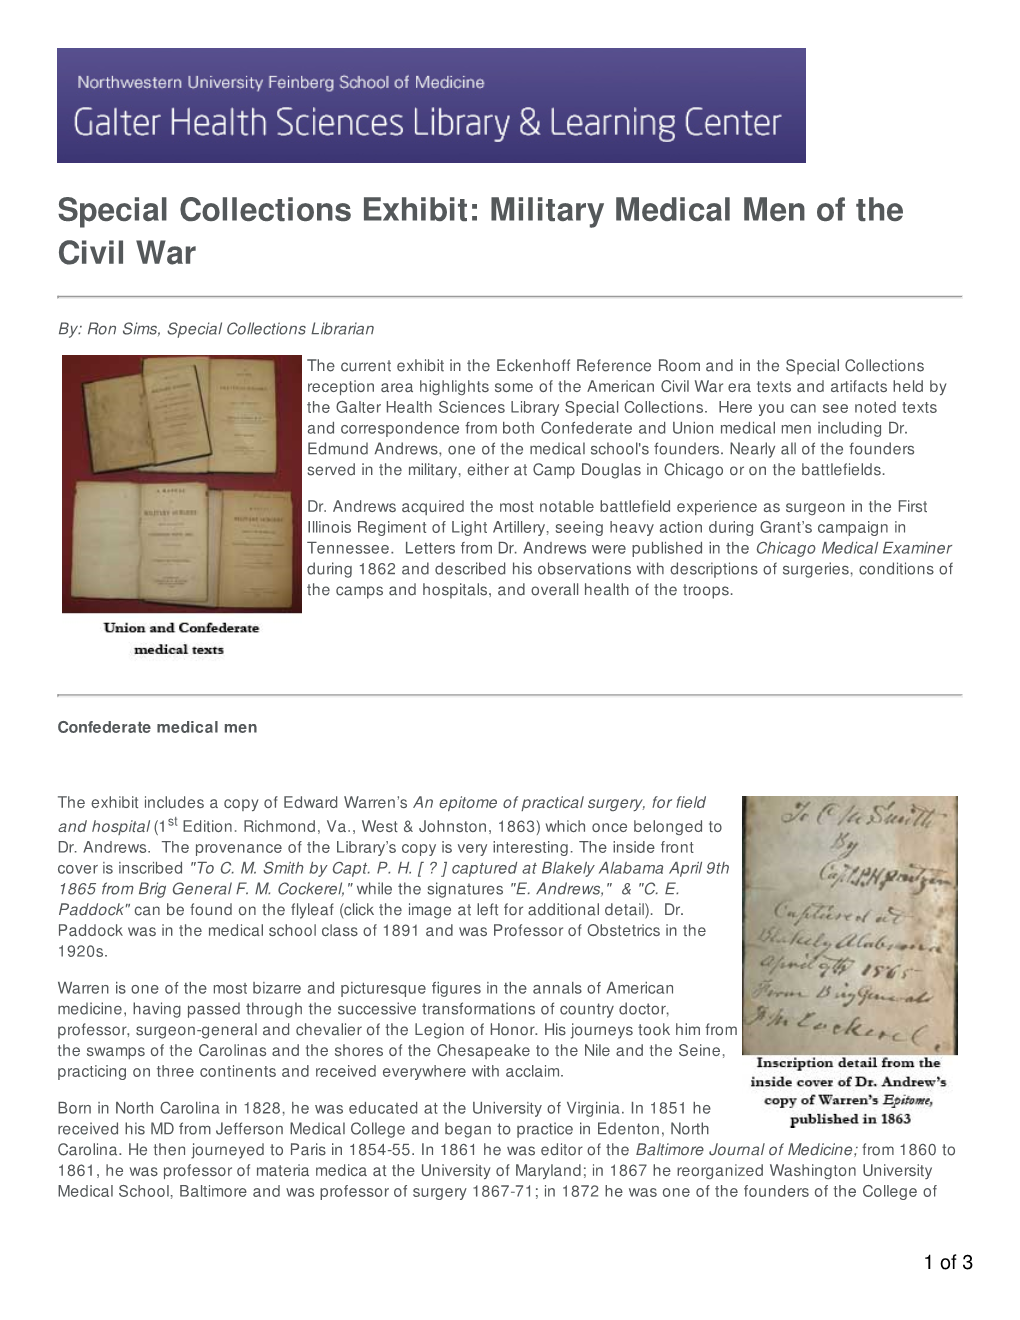 Military Medical Men of the Civil War